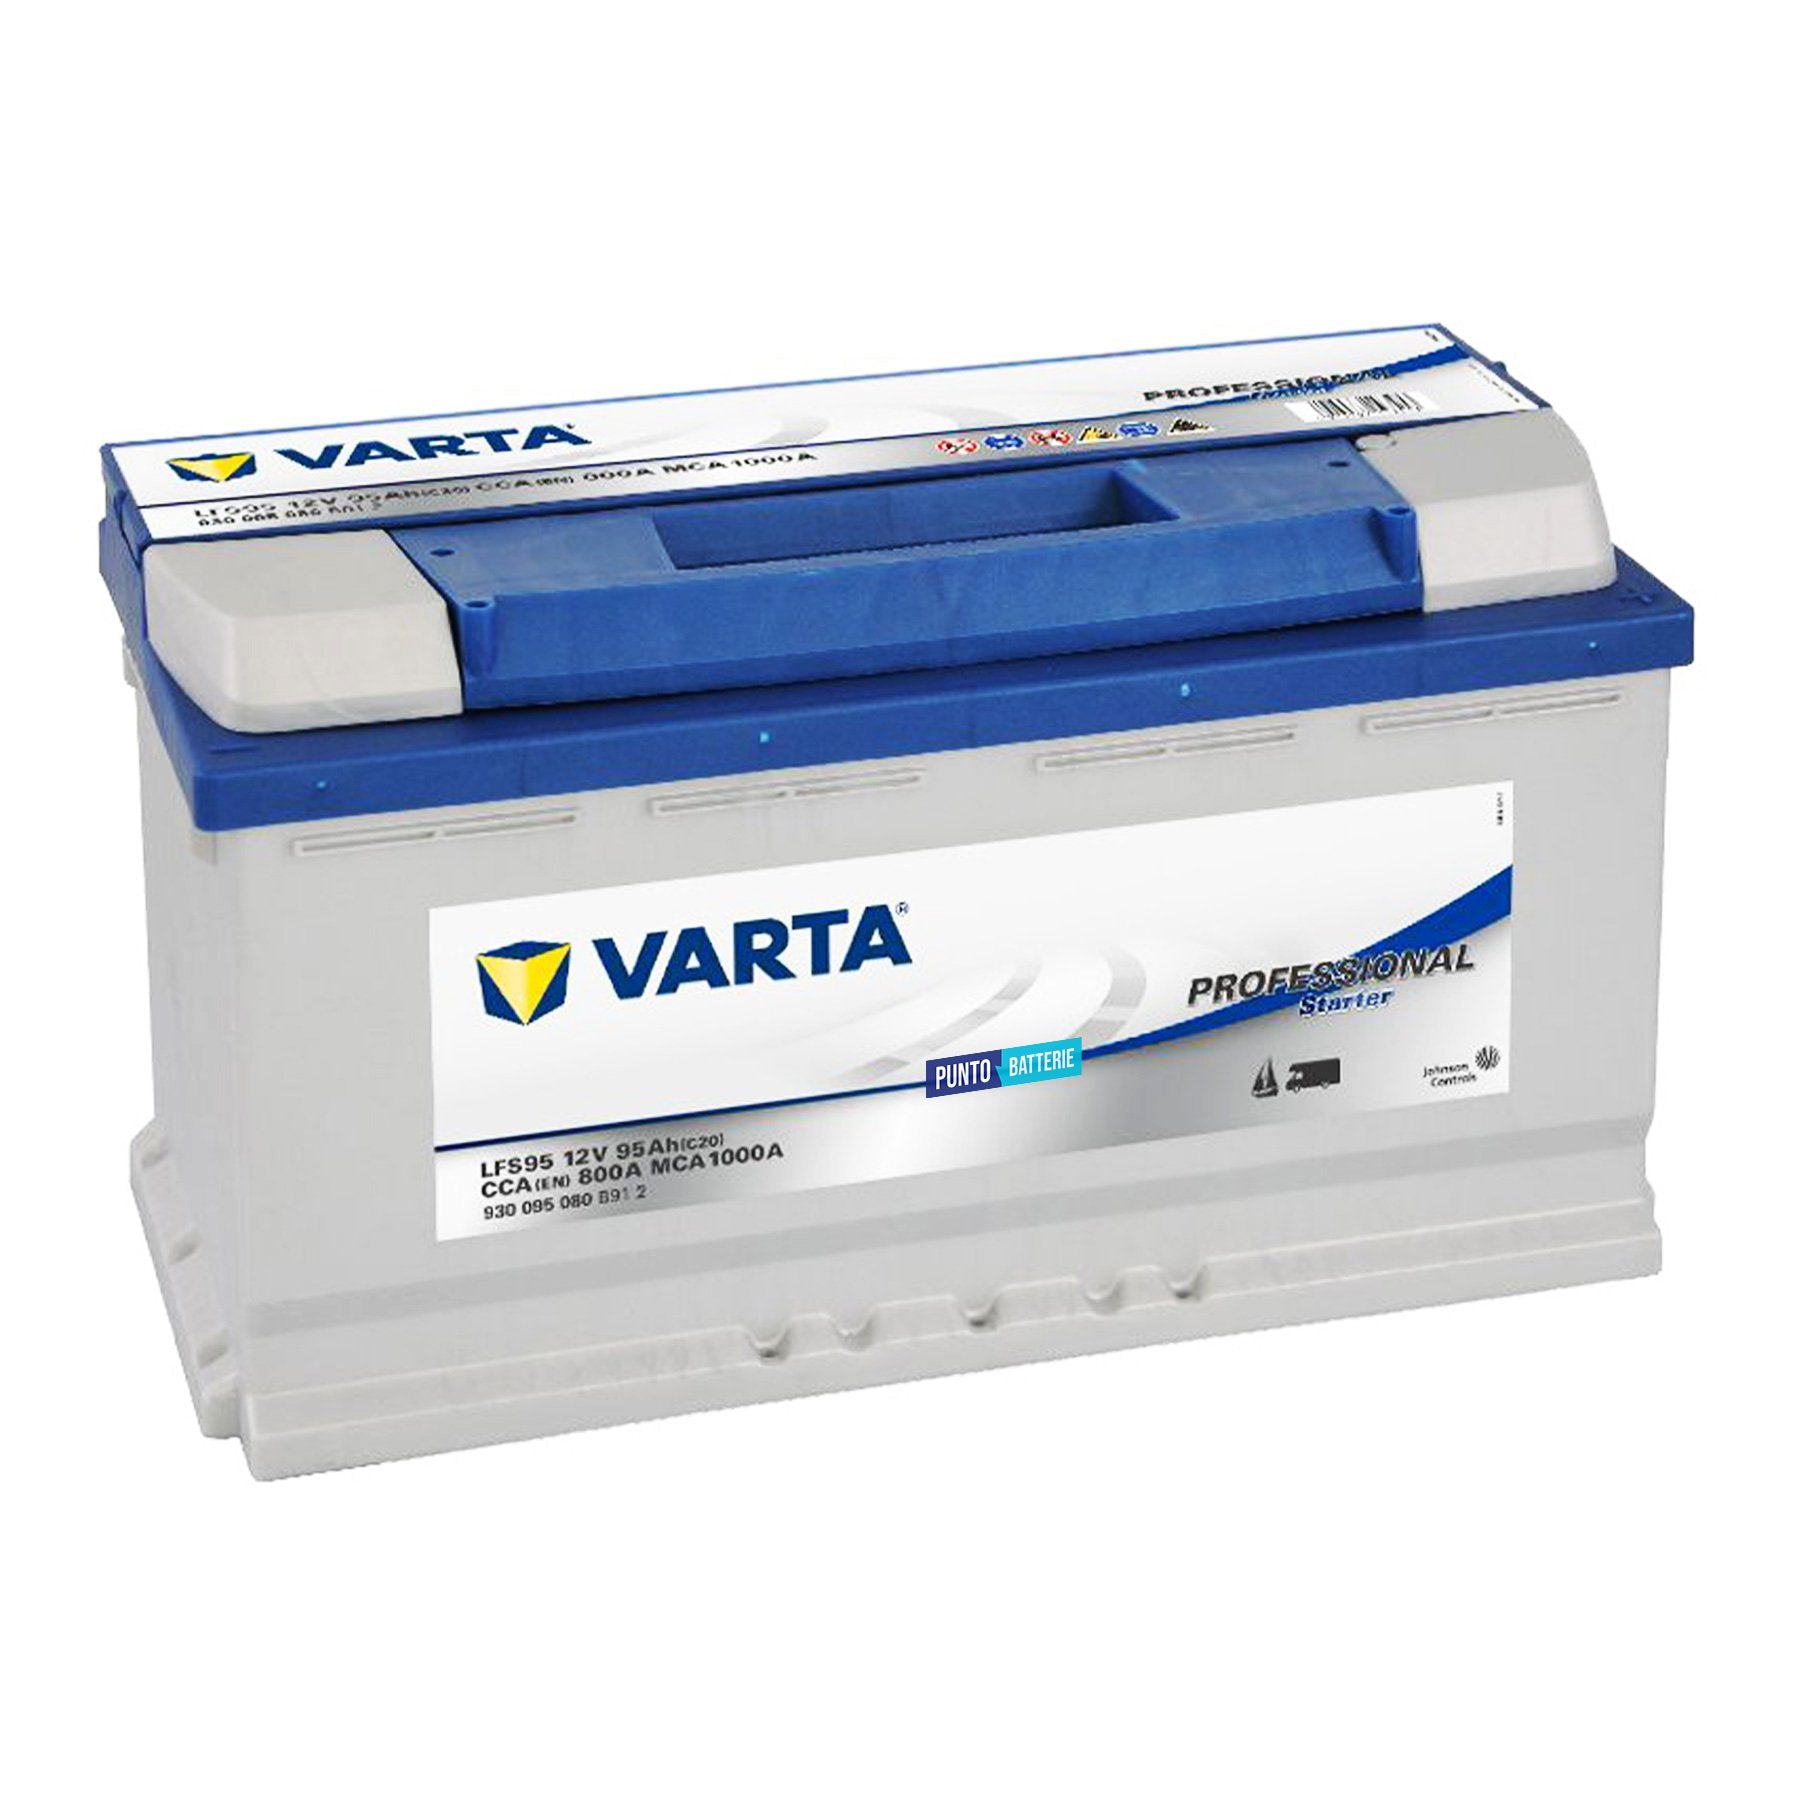 Batteria originale Varta Professional Starter LFS95, dimensioni 353 x 175 x 190, 12 volt, 95 amperora. Batteria per nautica e campeggio.